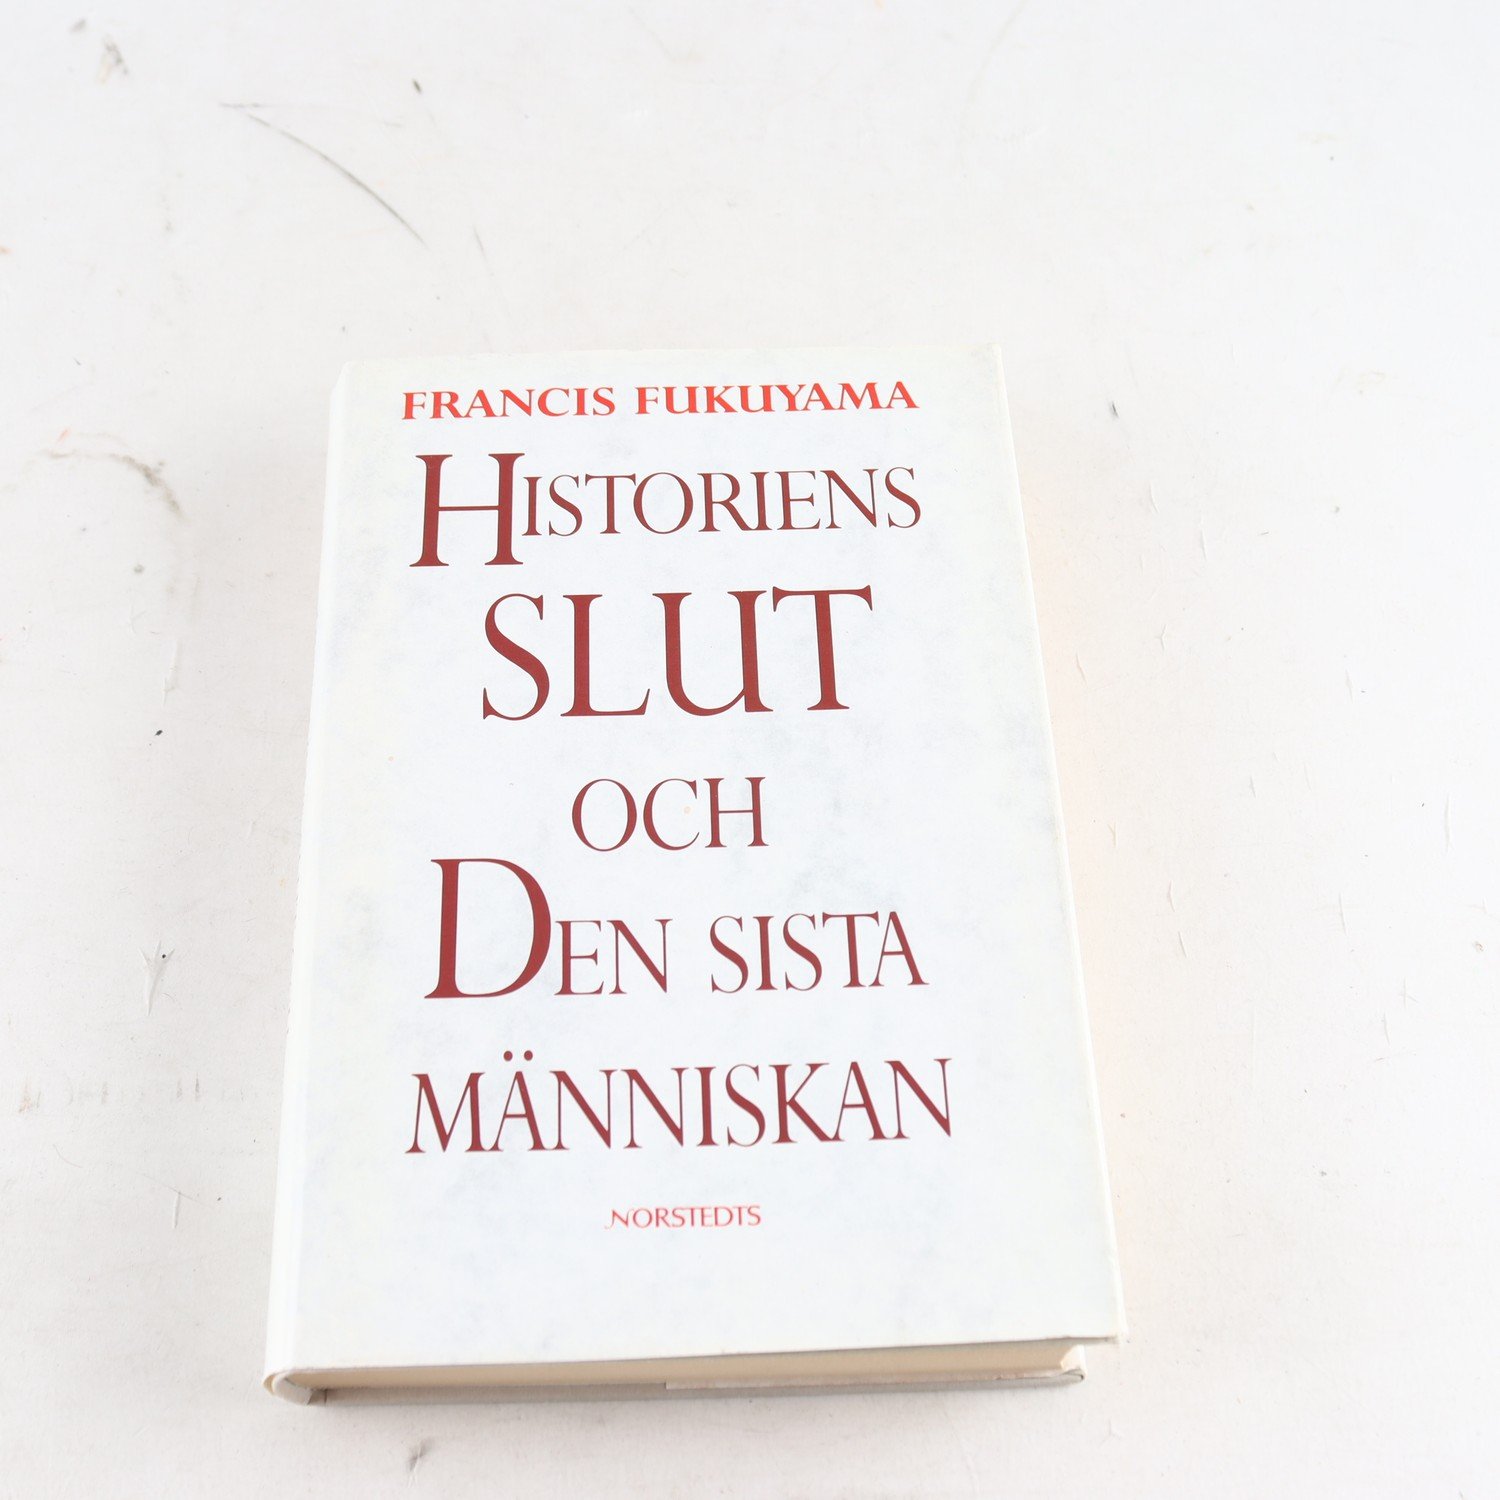 Francis Fukuyama, Historiens slut och den sista människan